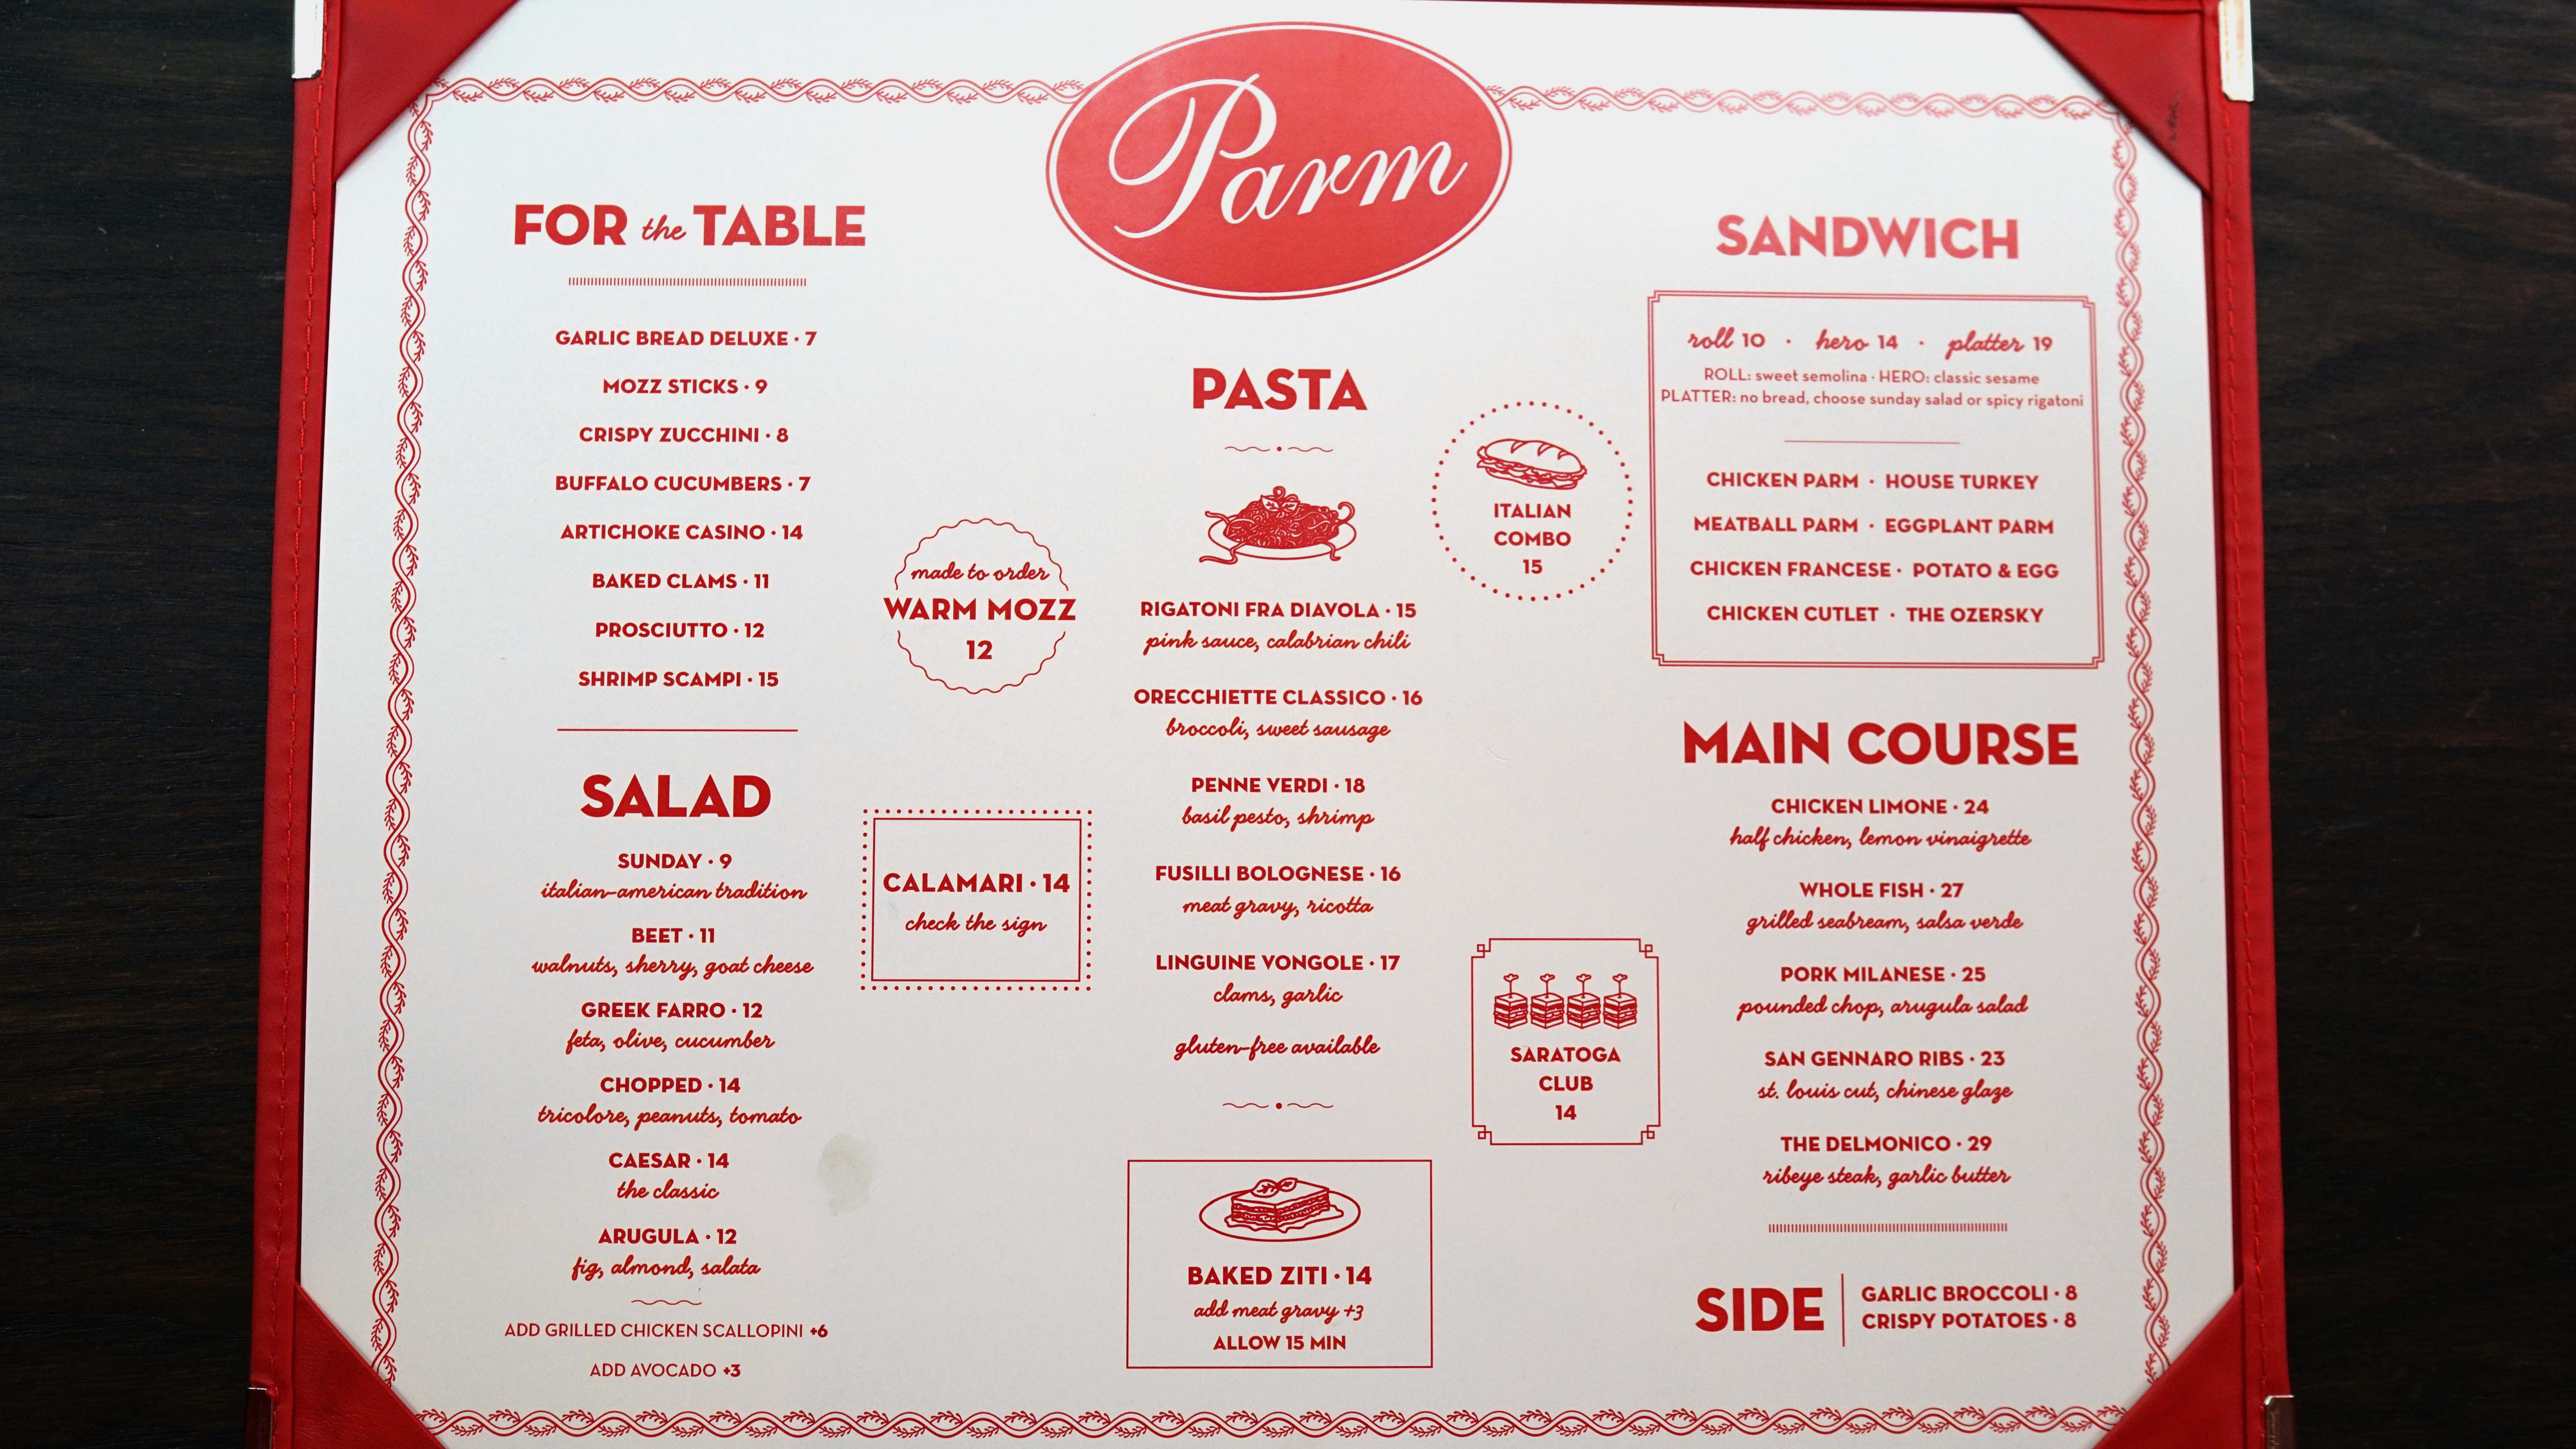 Parm menu